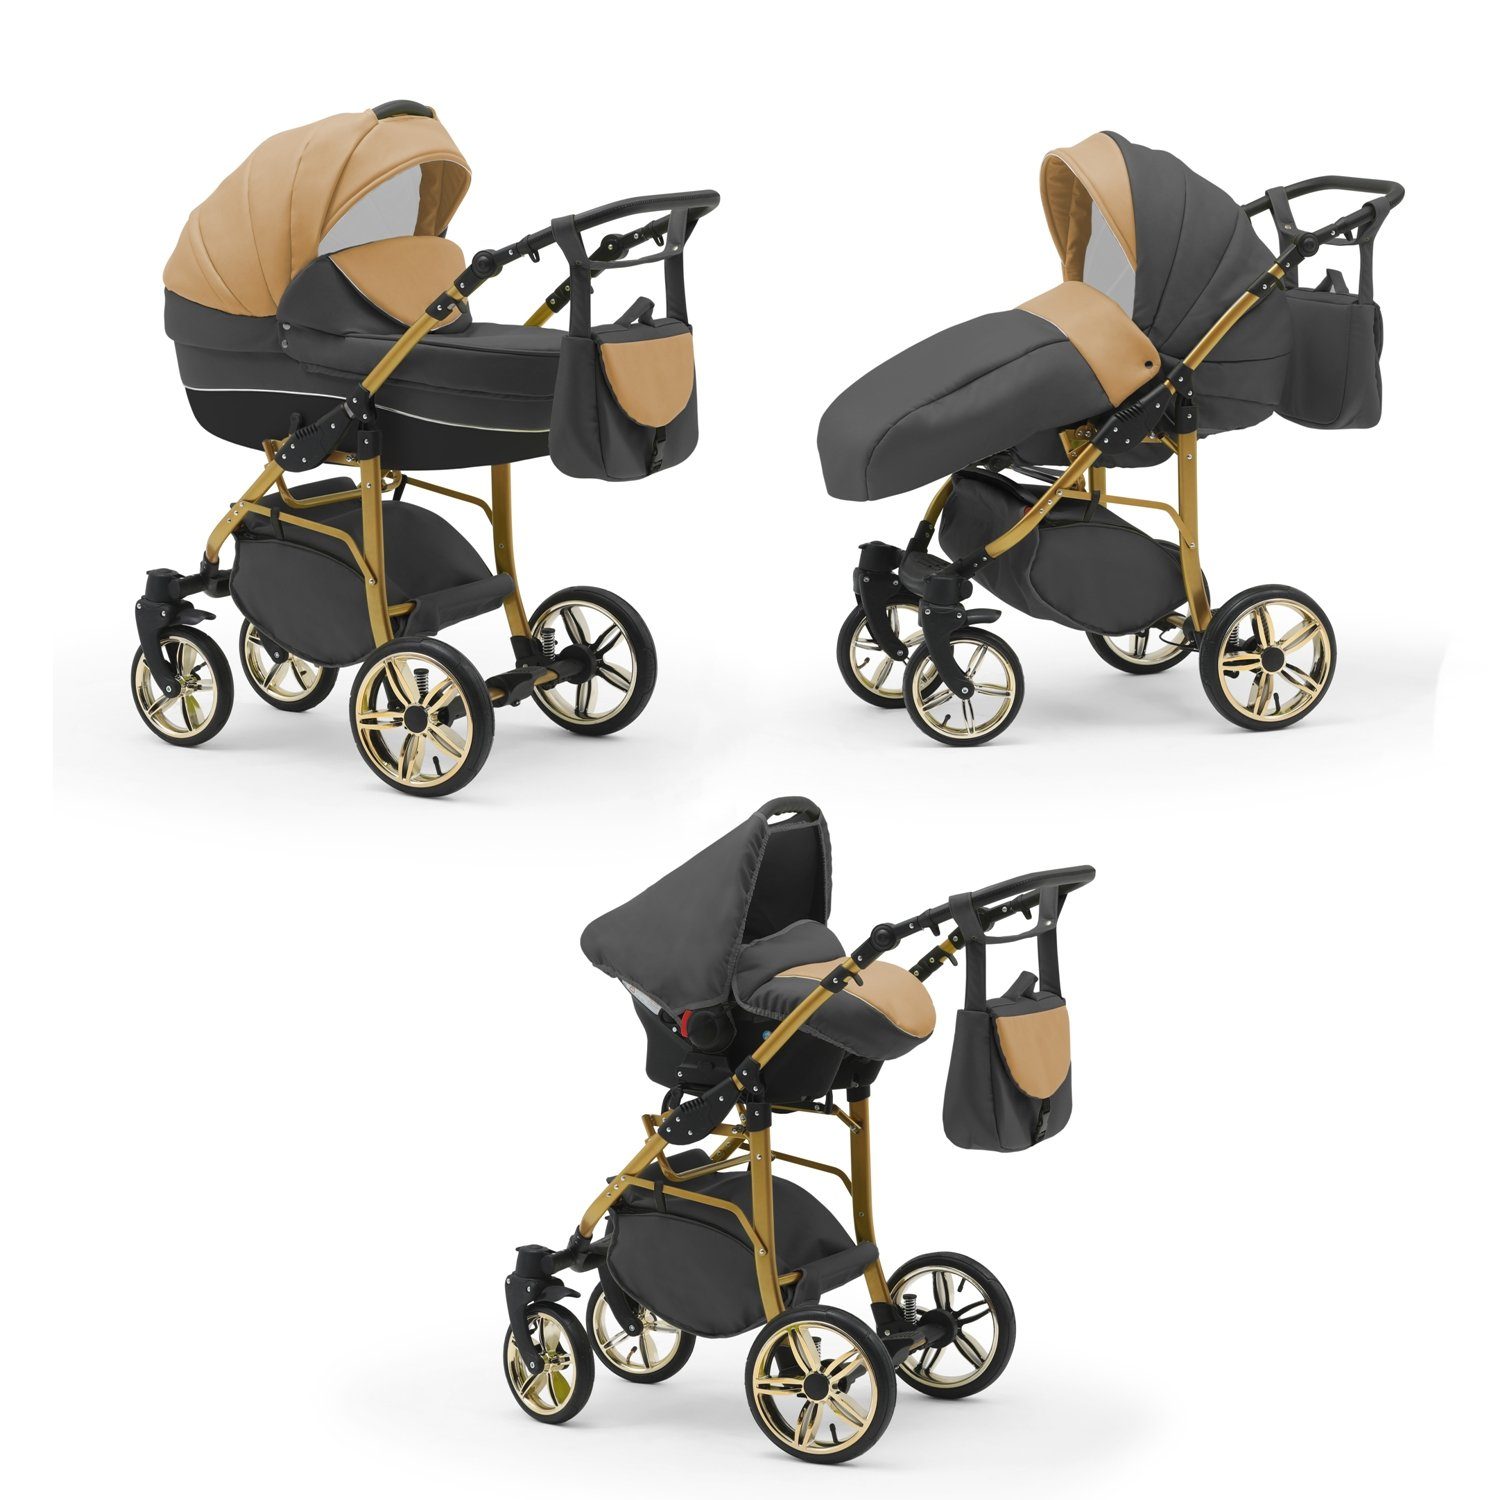 preisberechnung babies-on-wheels Kombi-Kinderwagen 3 in 1 - Beige-Grau-Schwarz Gold- 46 16 Farben Teile Cosmo in Kinderwagen-Set